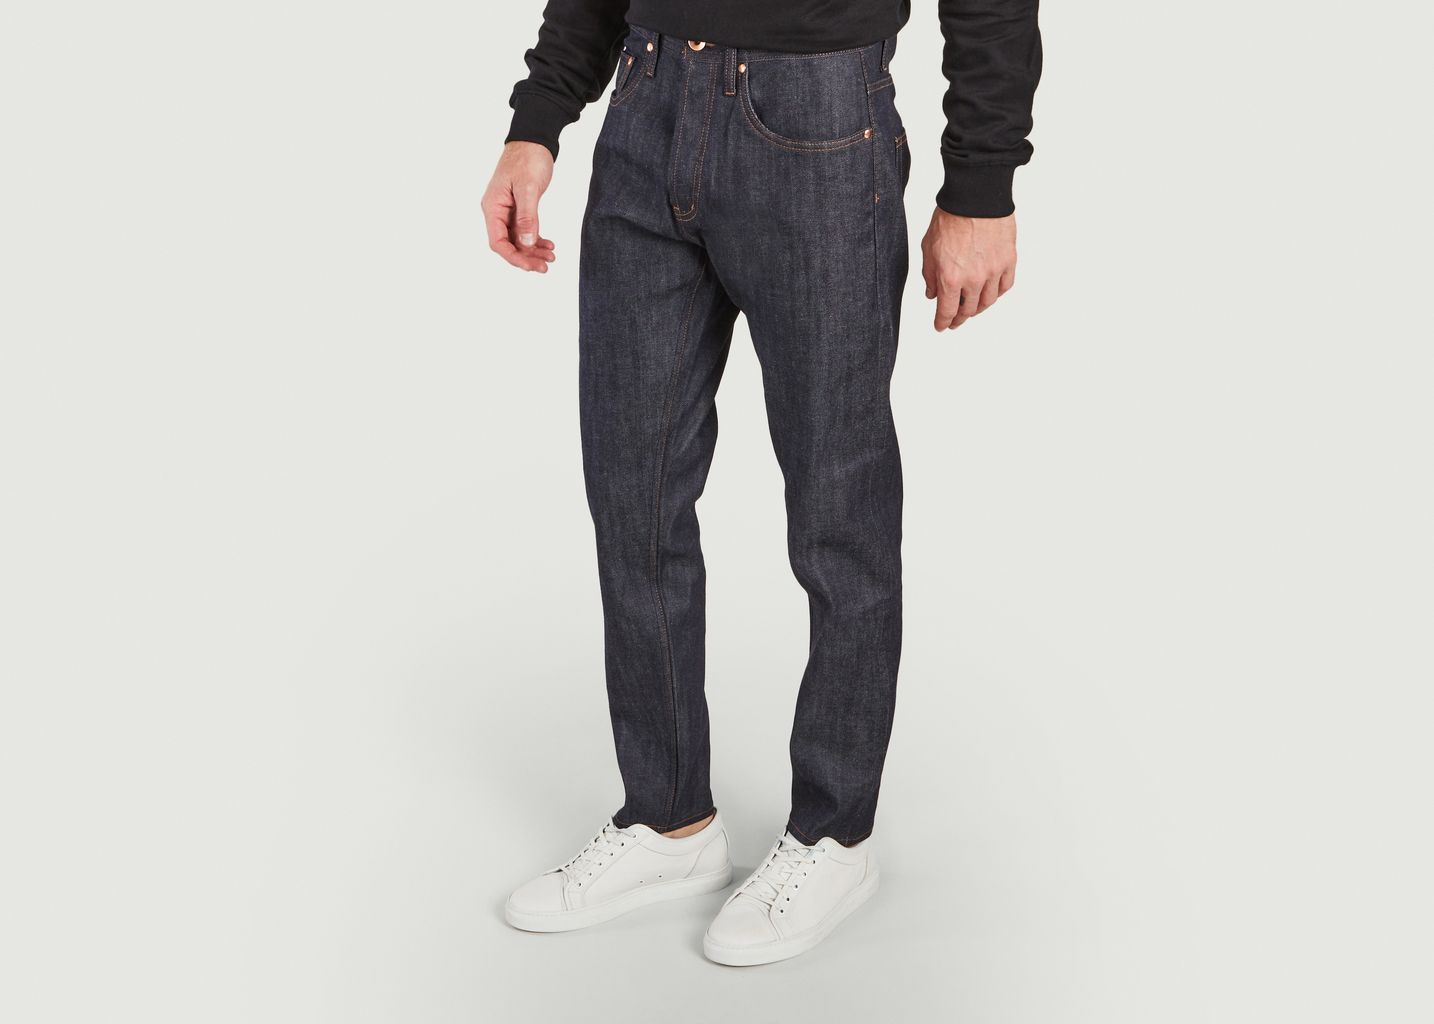 Entspannt konisch zulaufende Jeans - The Unbranded Brand